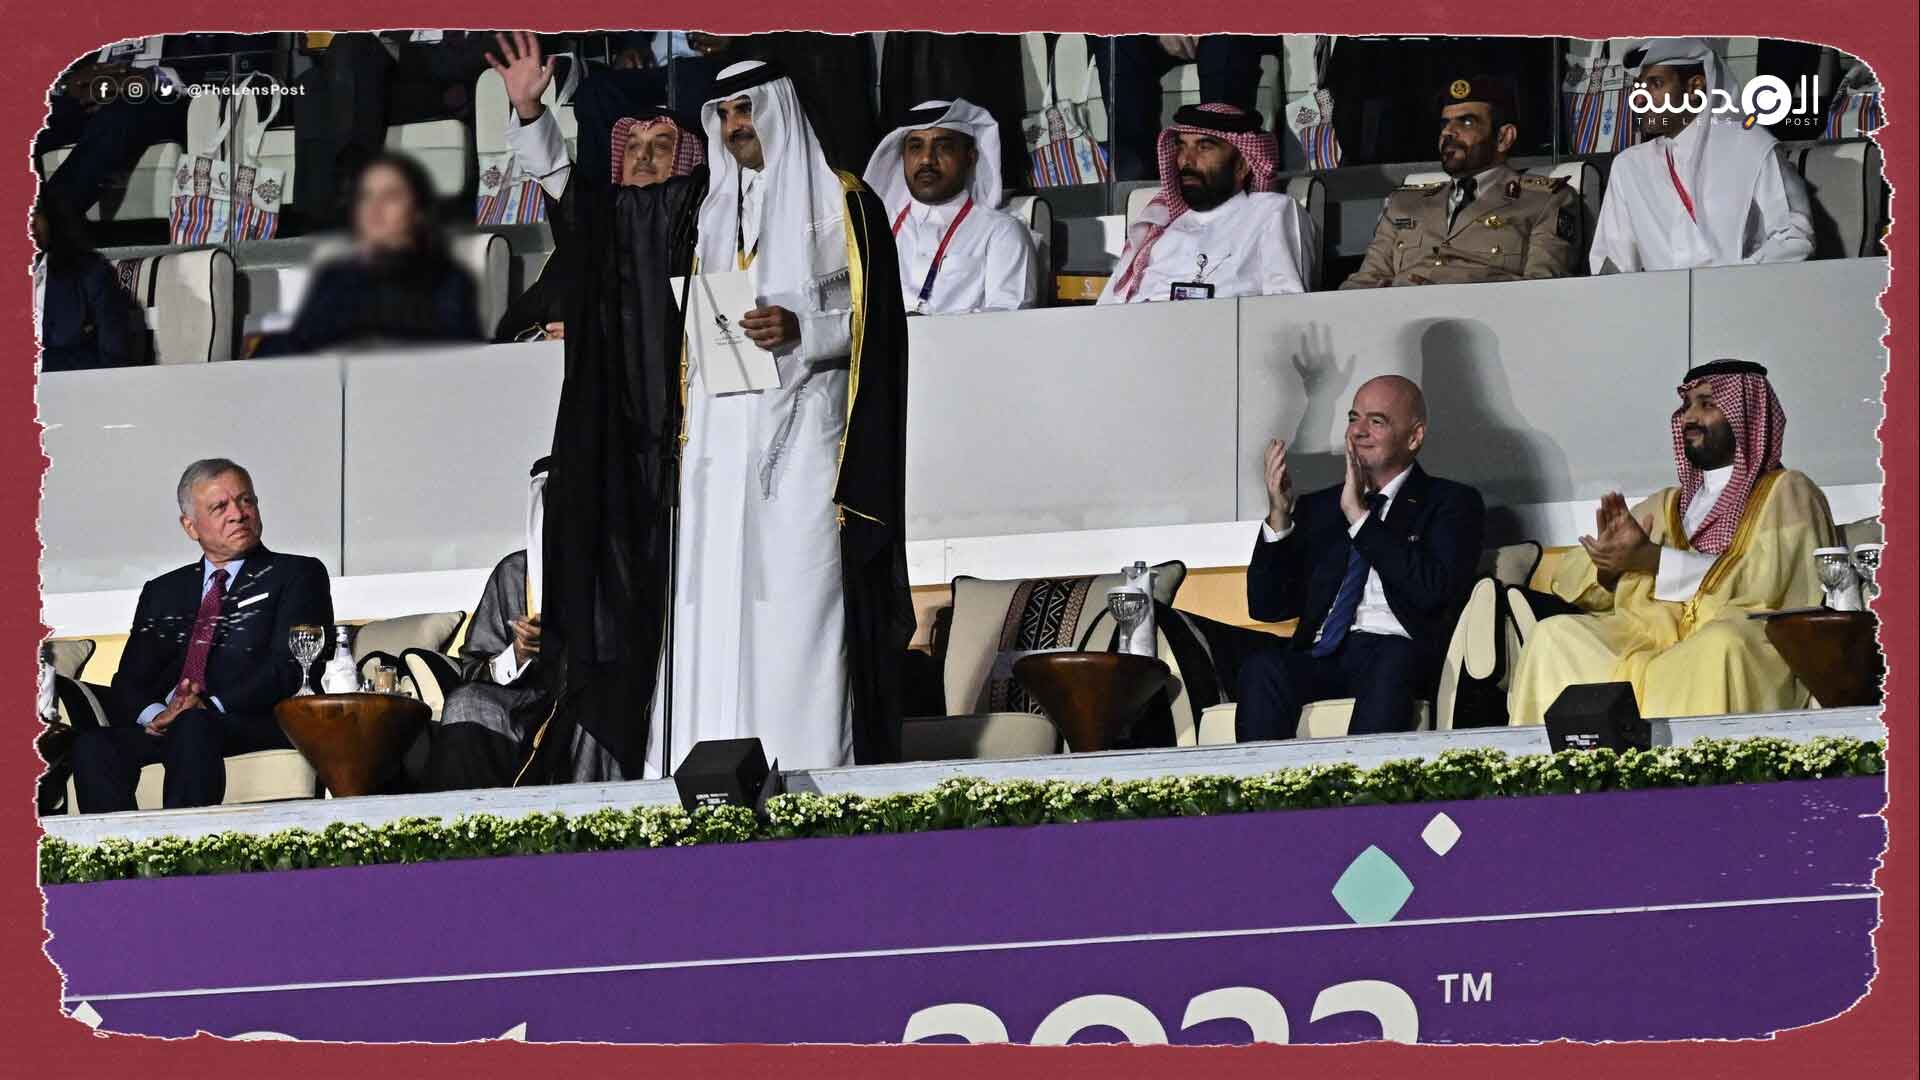 قطر تراجع استثماراتها في لندن بعد قرار حظر إعلانات كأس العالم